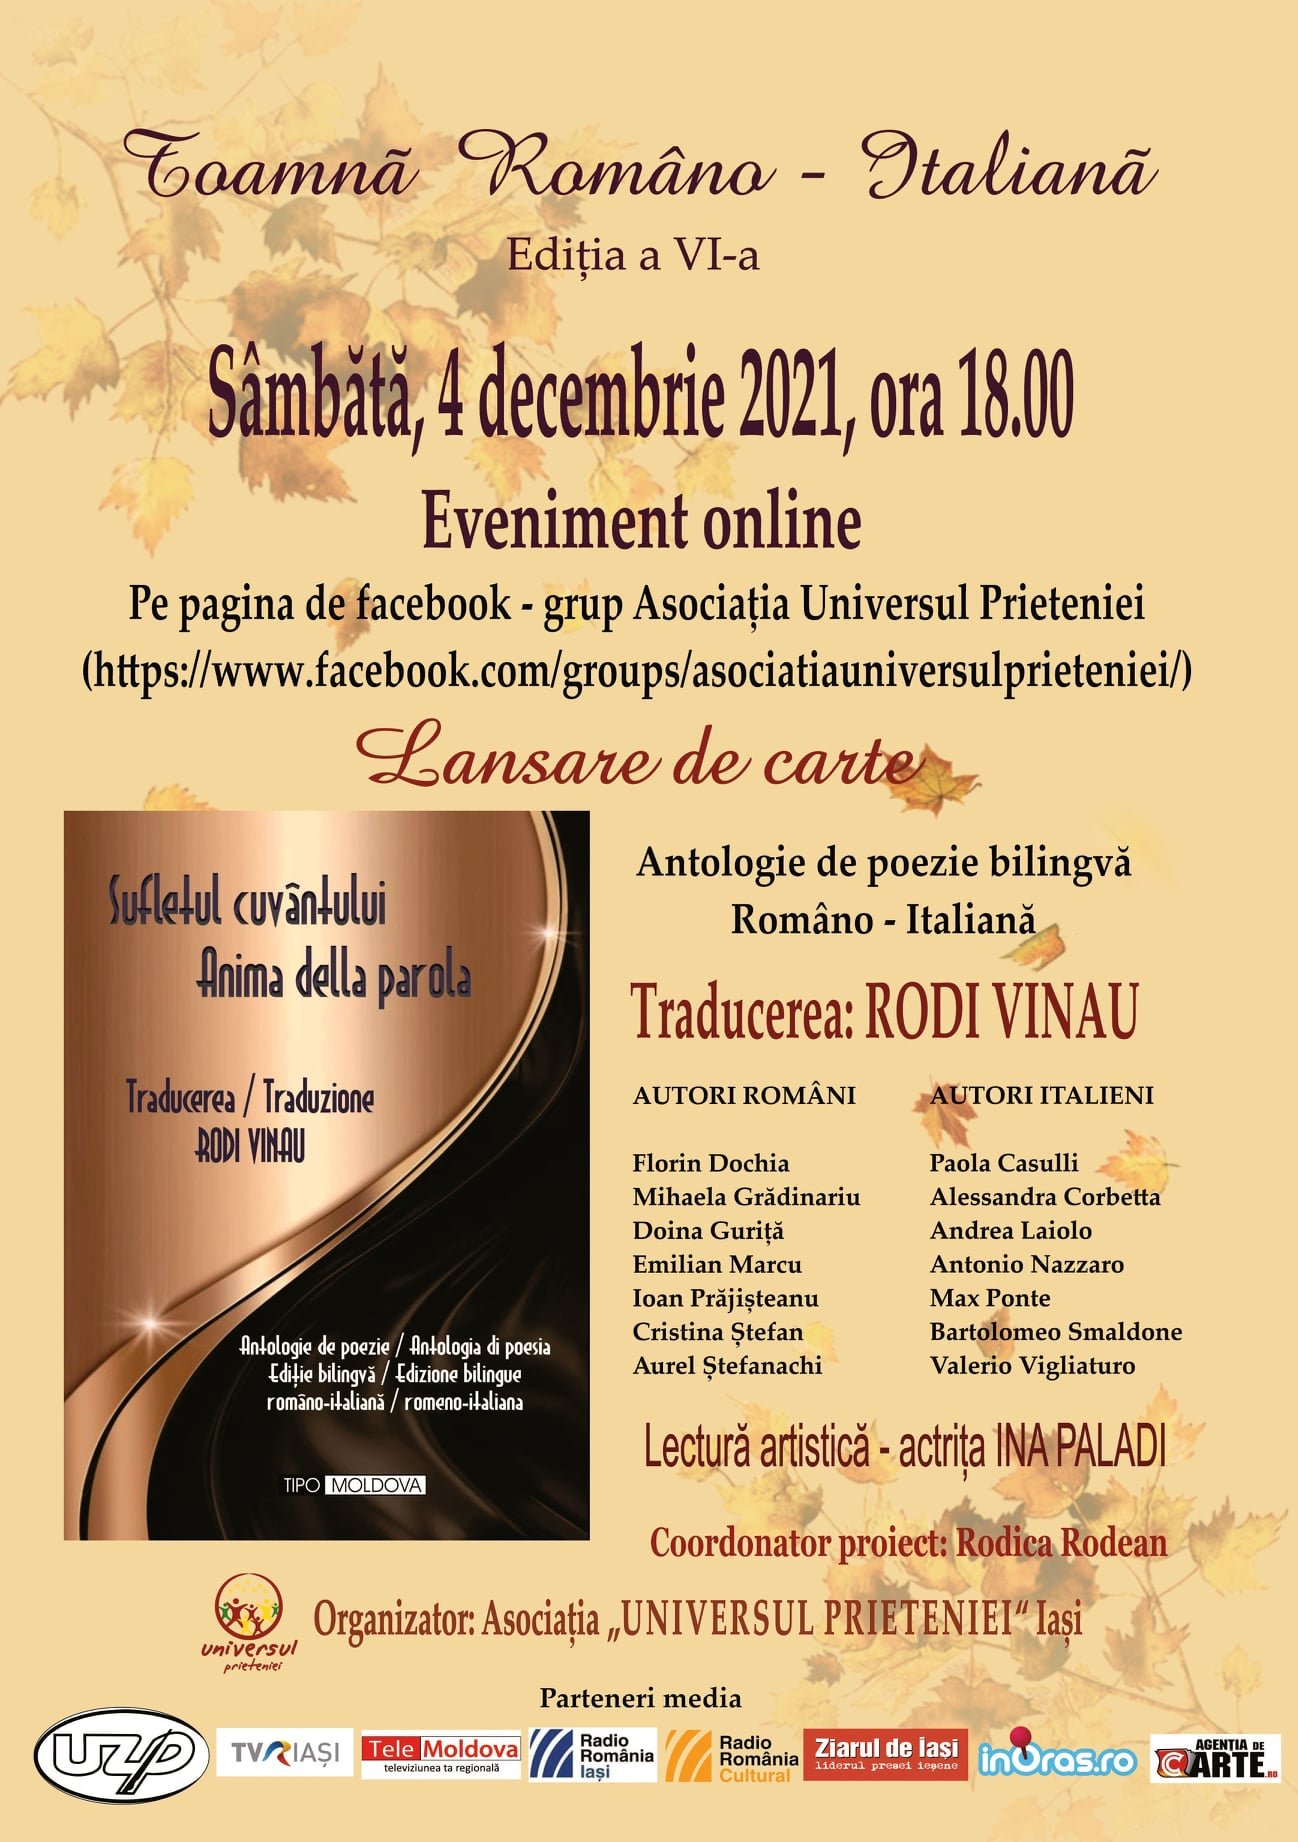  Antologie bilingvă de poezii în limba română şi italiană, prezentată sâmbătă